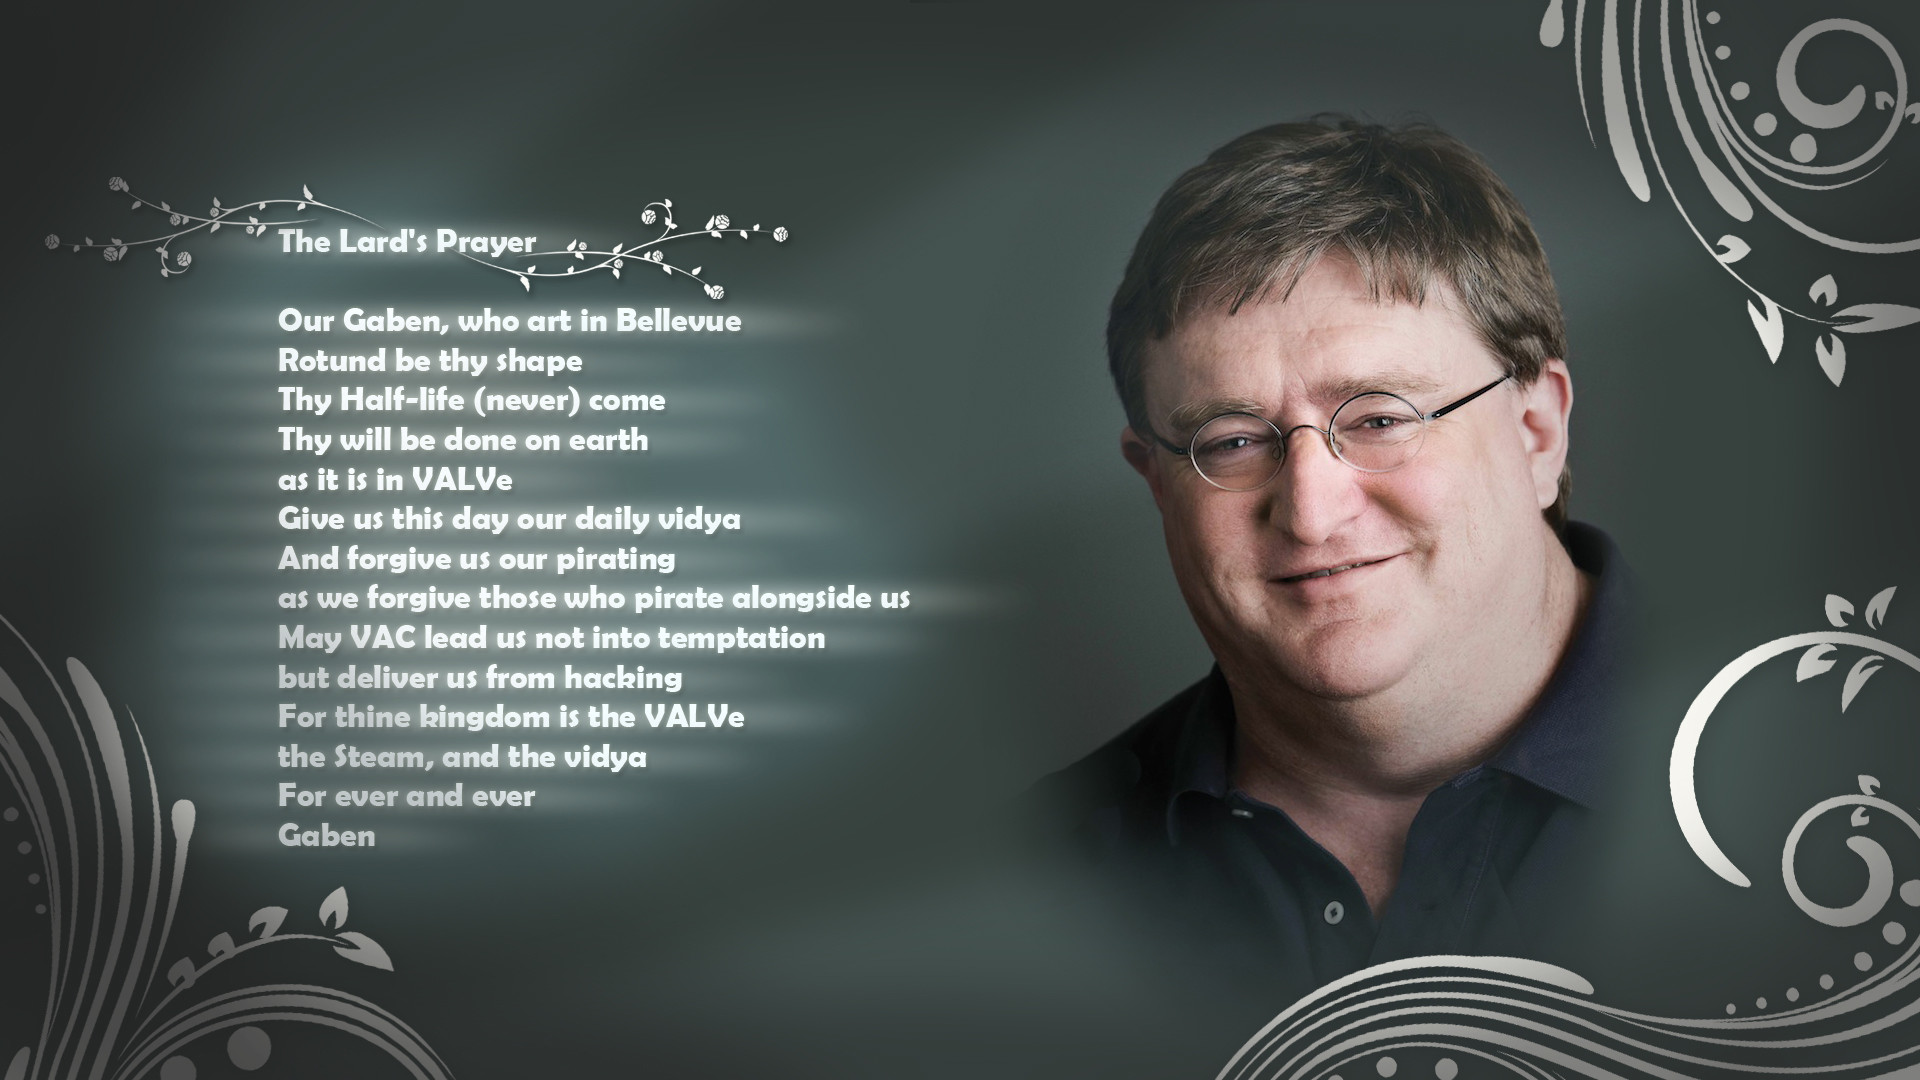 Gabe Newell The Lards Prayer Prayer text humor wallpaper 73746 WallpaperUP